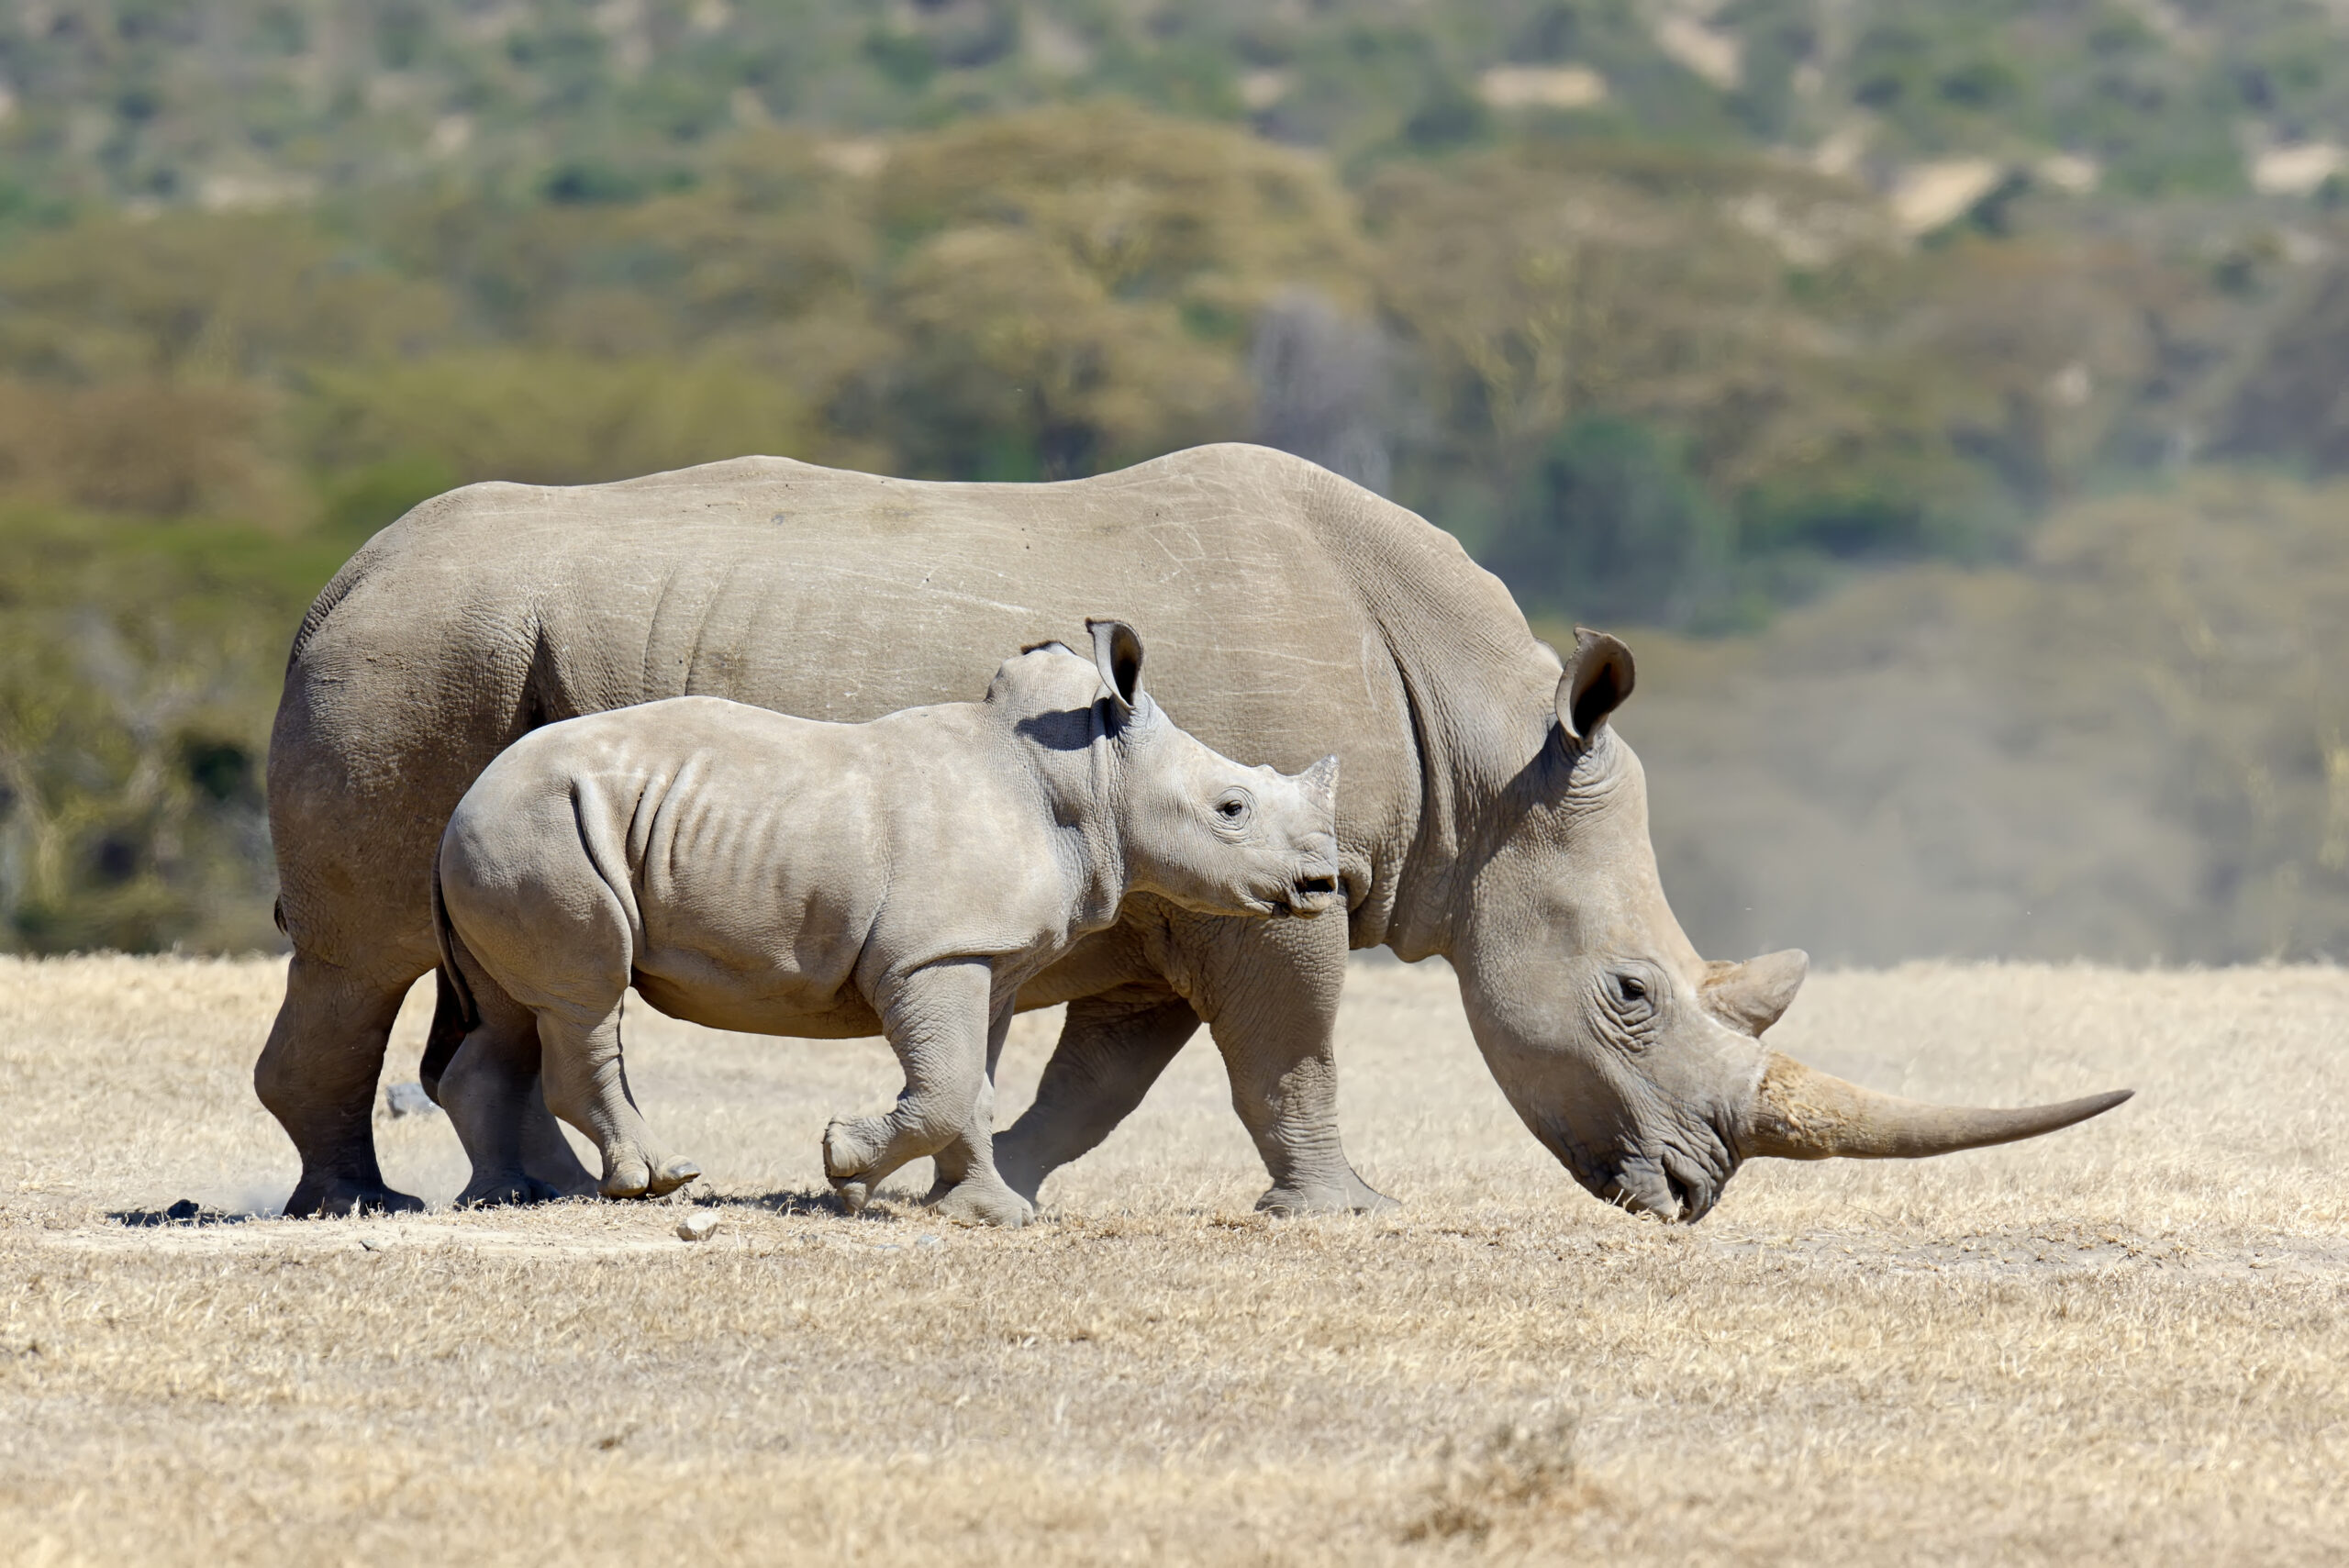 Une FIV réussie pourrait sauver le rhinocéros blanc du Nord de l’extinction